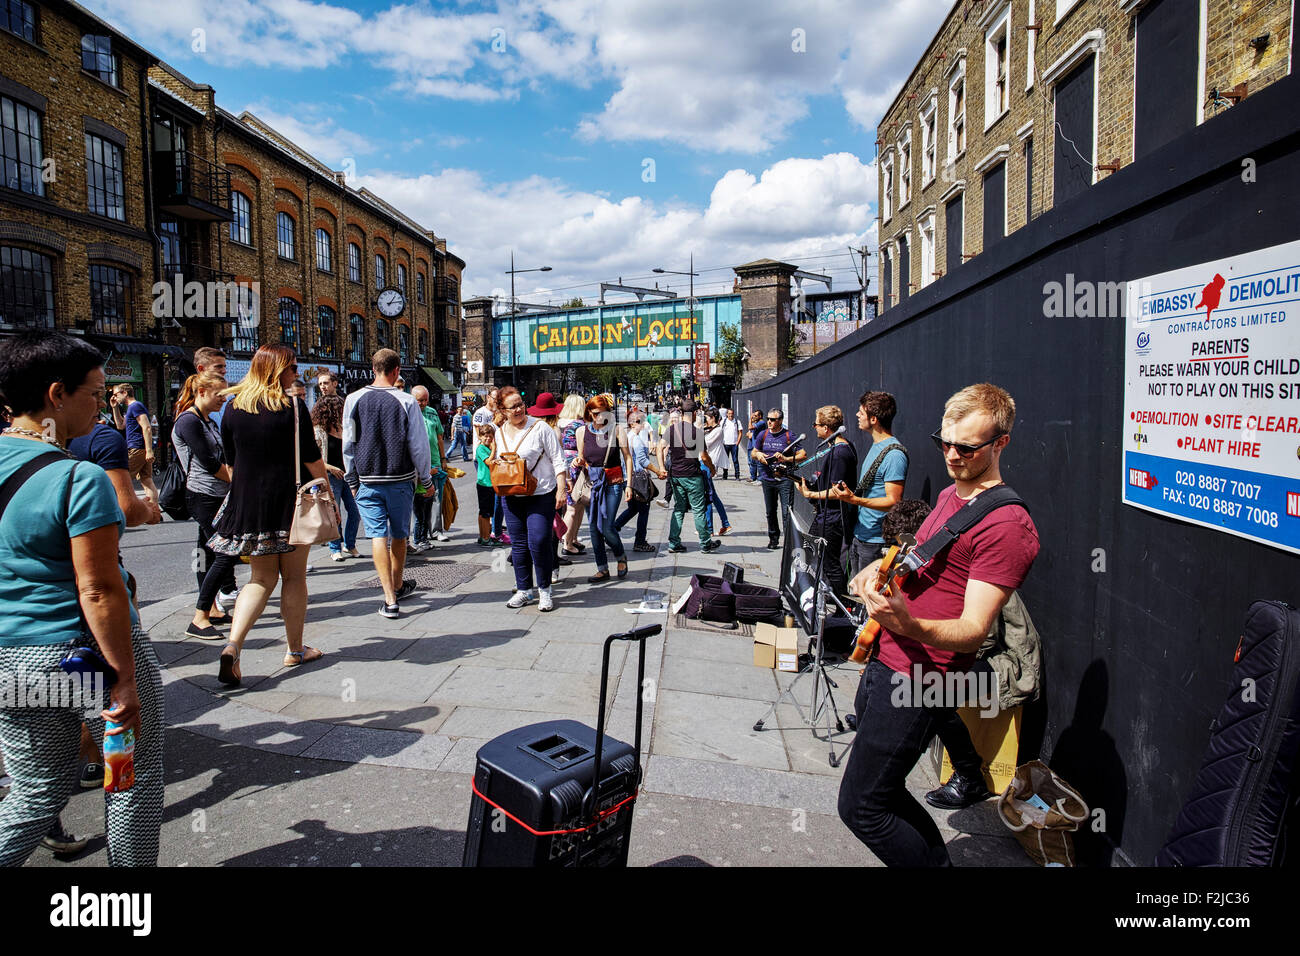 Street band joue sur Hampstead Road près de Camden Town Londres Angleterre à côté du célèbre marché de Camden Lock populaires auprès des touristes Banque D'Images